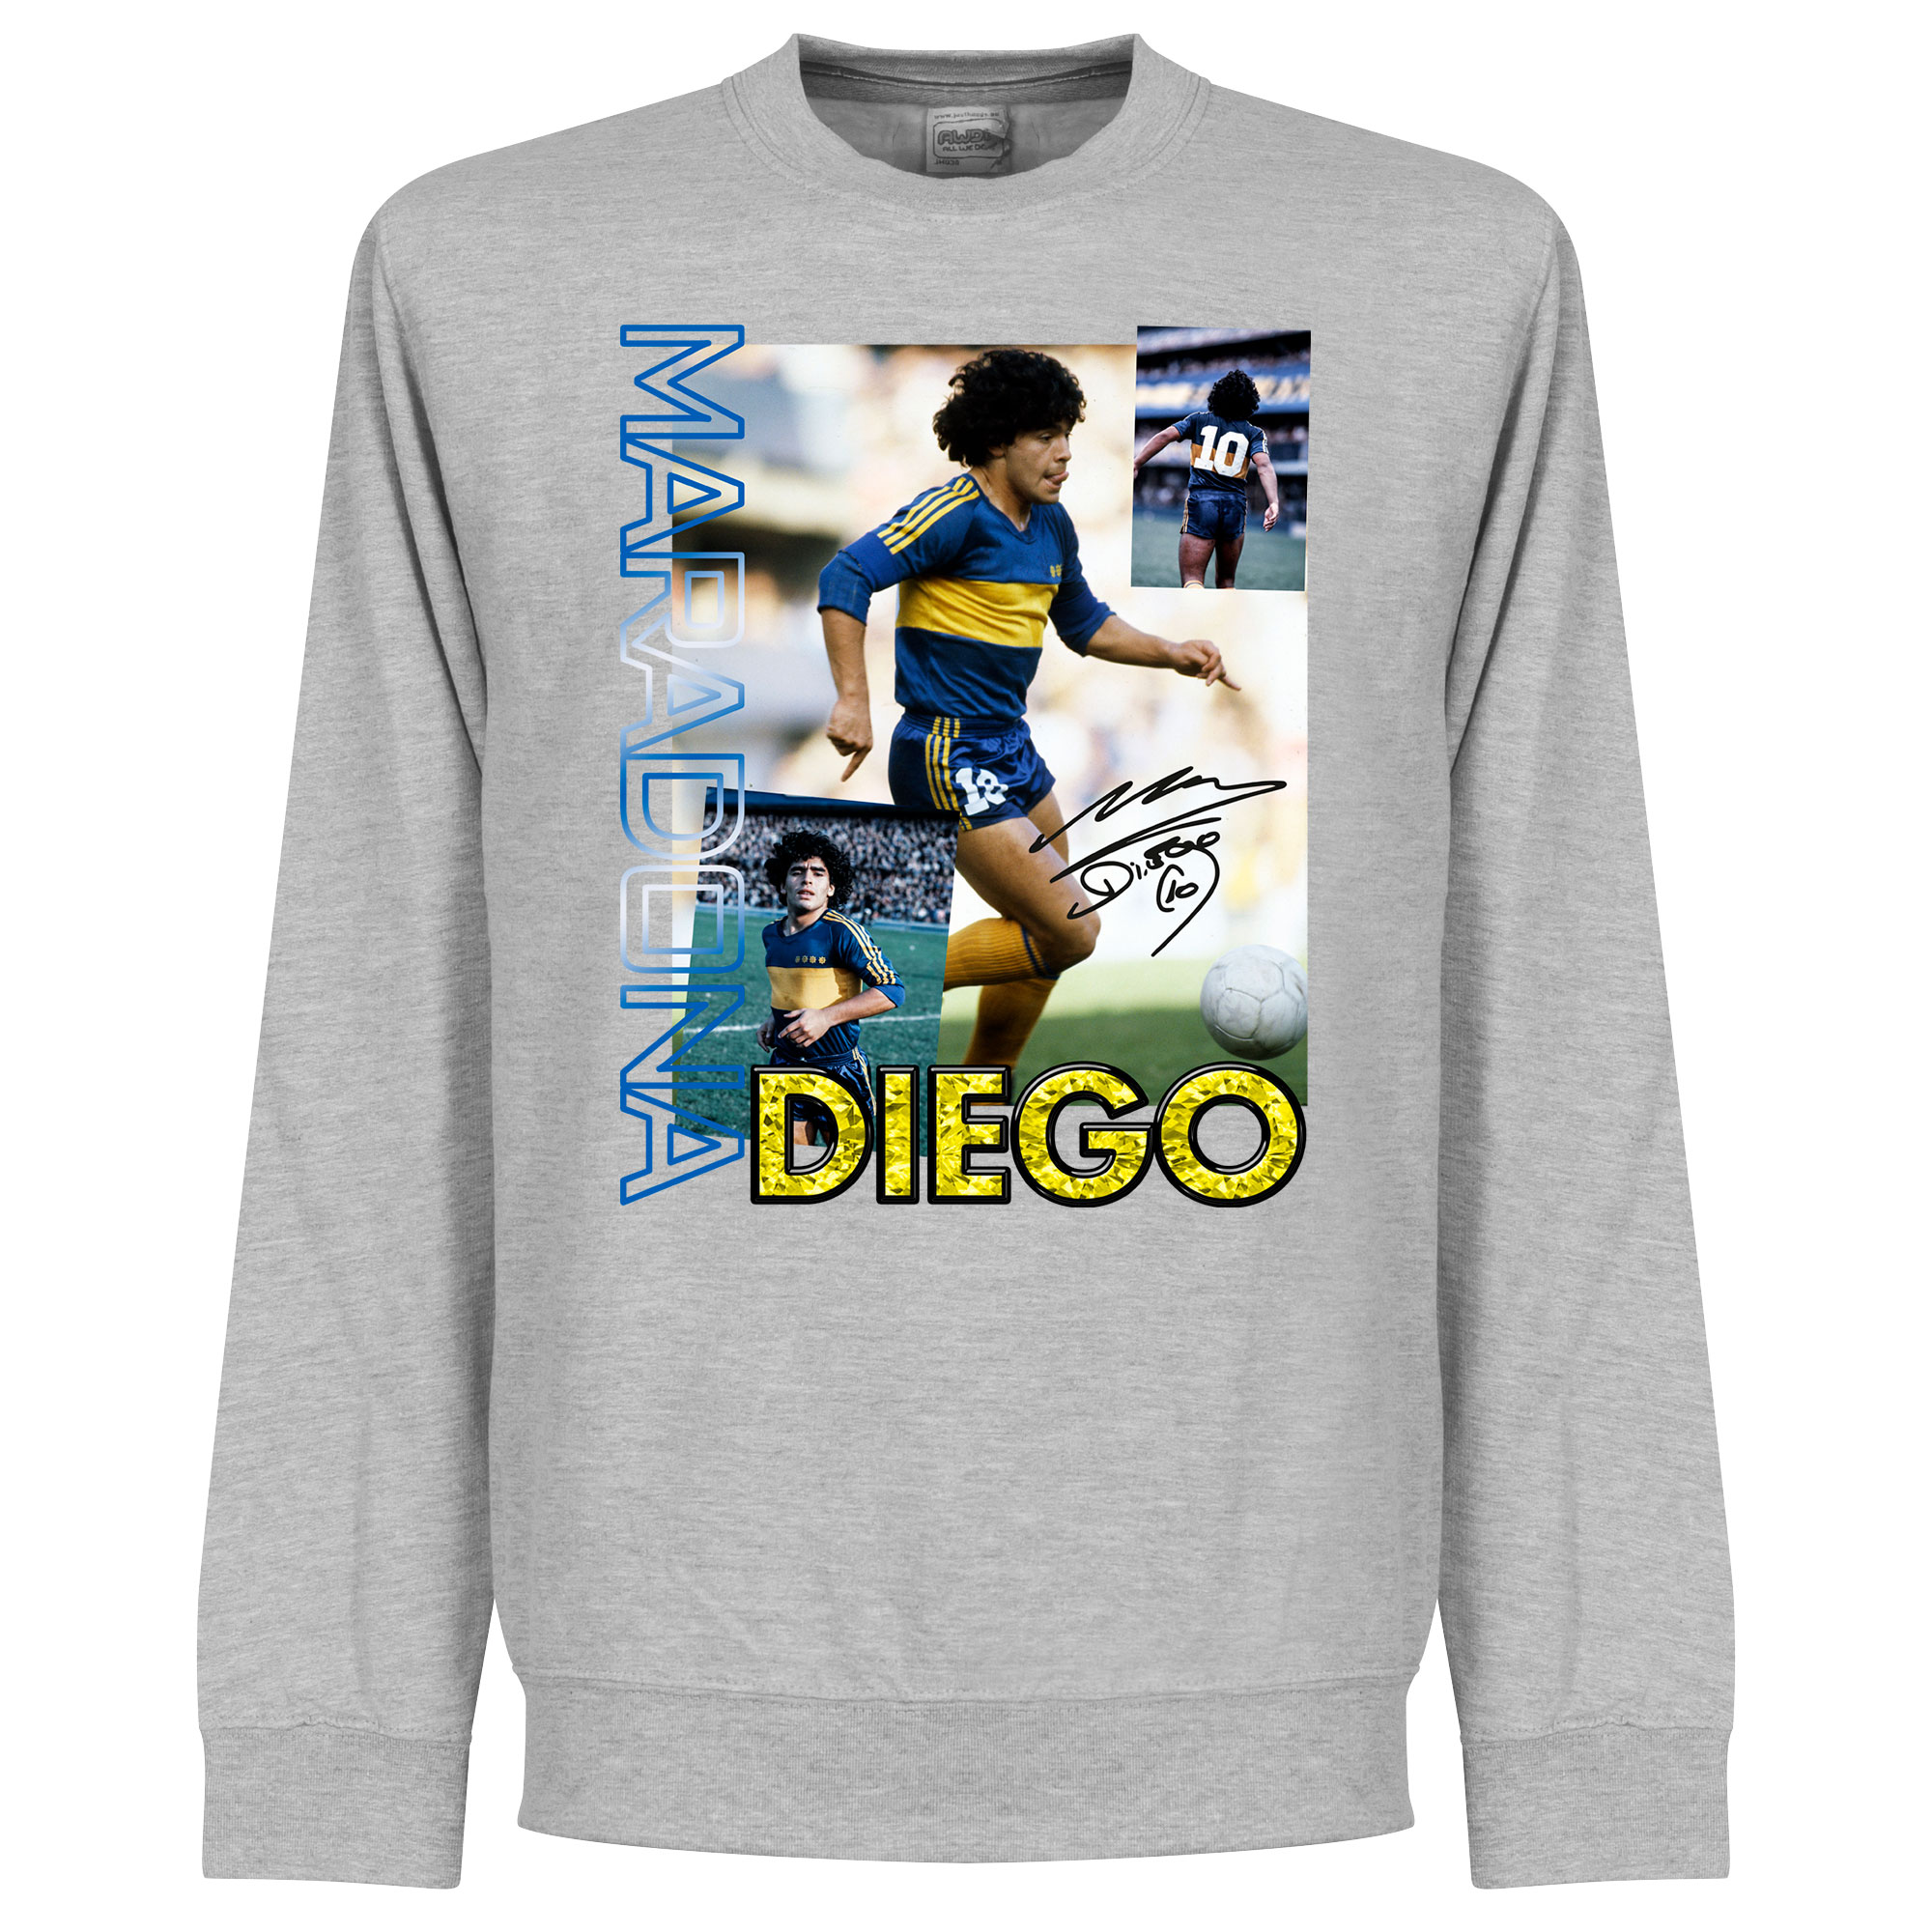 Diego Maradona Boca Old Skool Sweater - Grijs - Kinderen - 6 Years